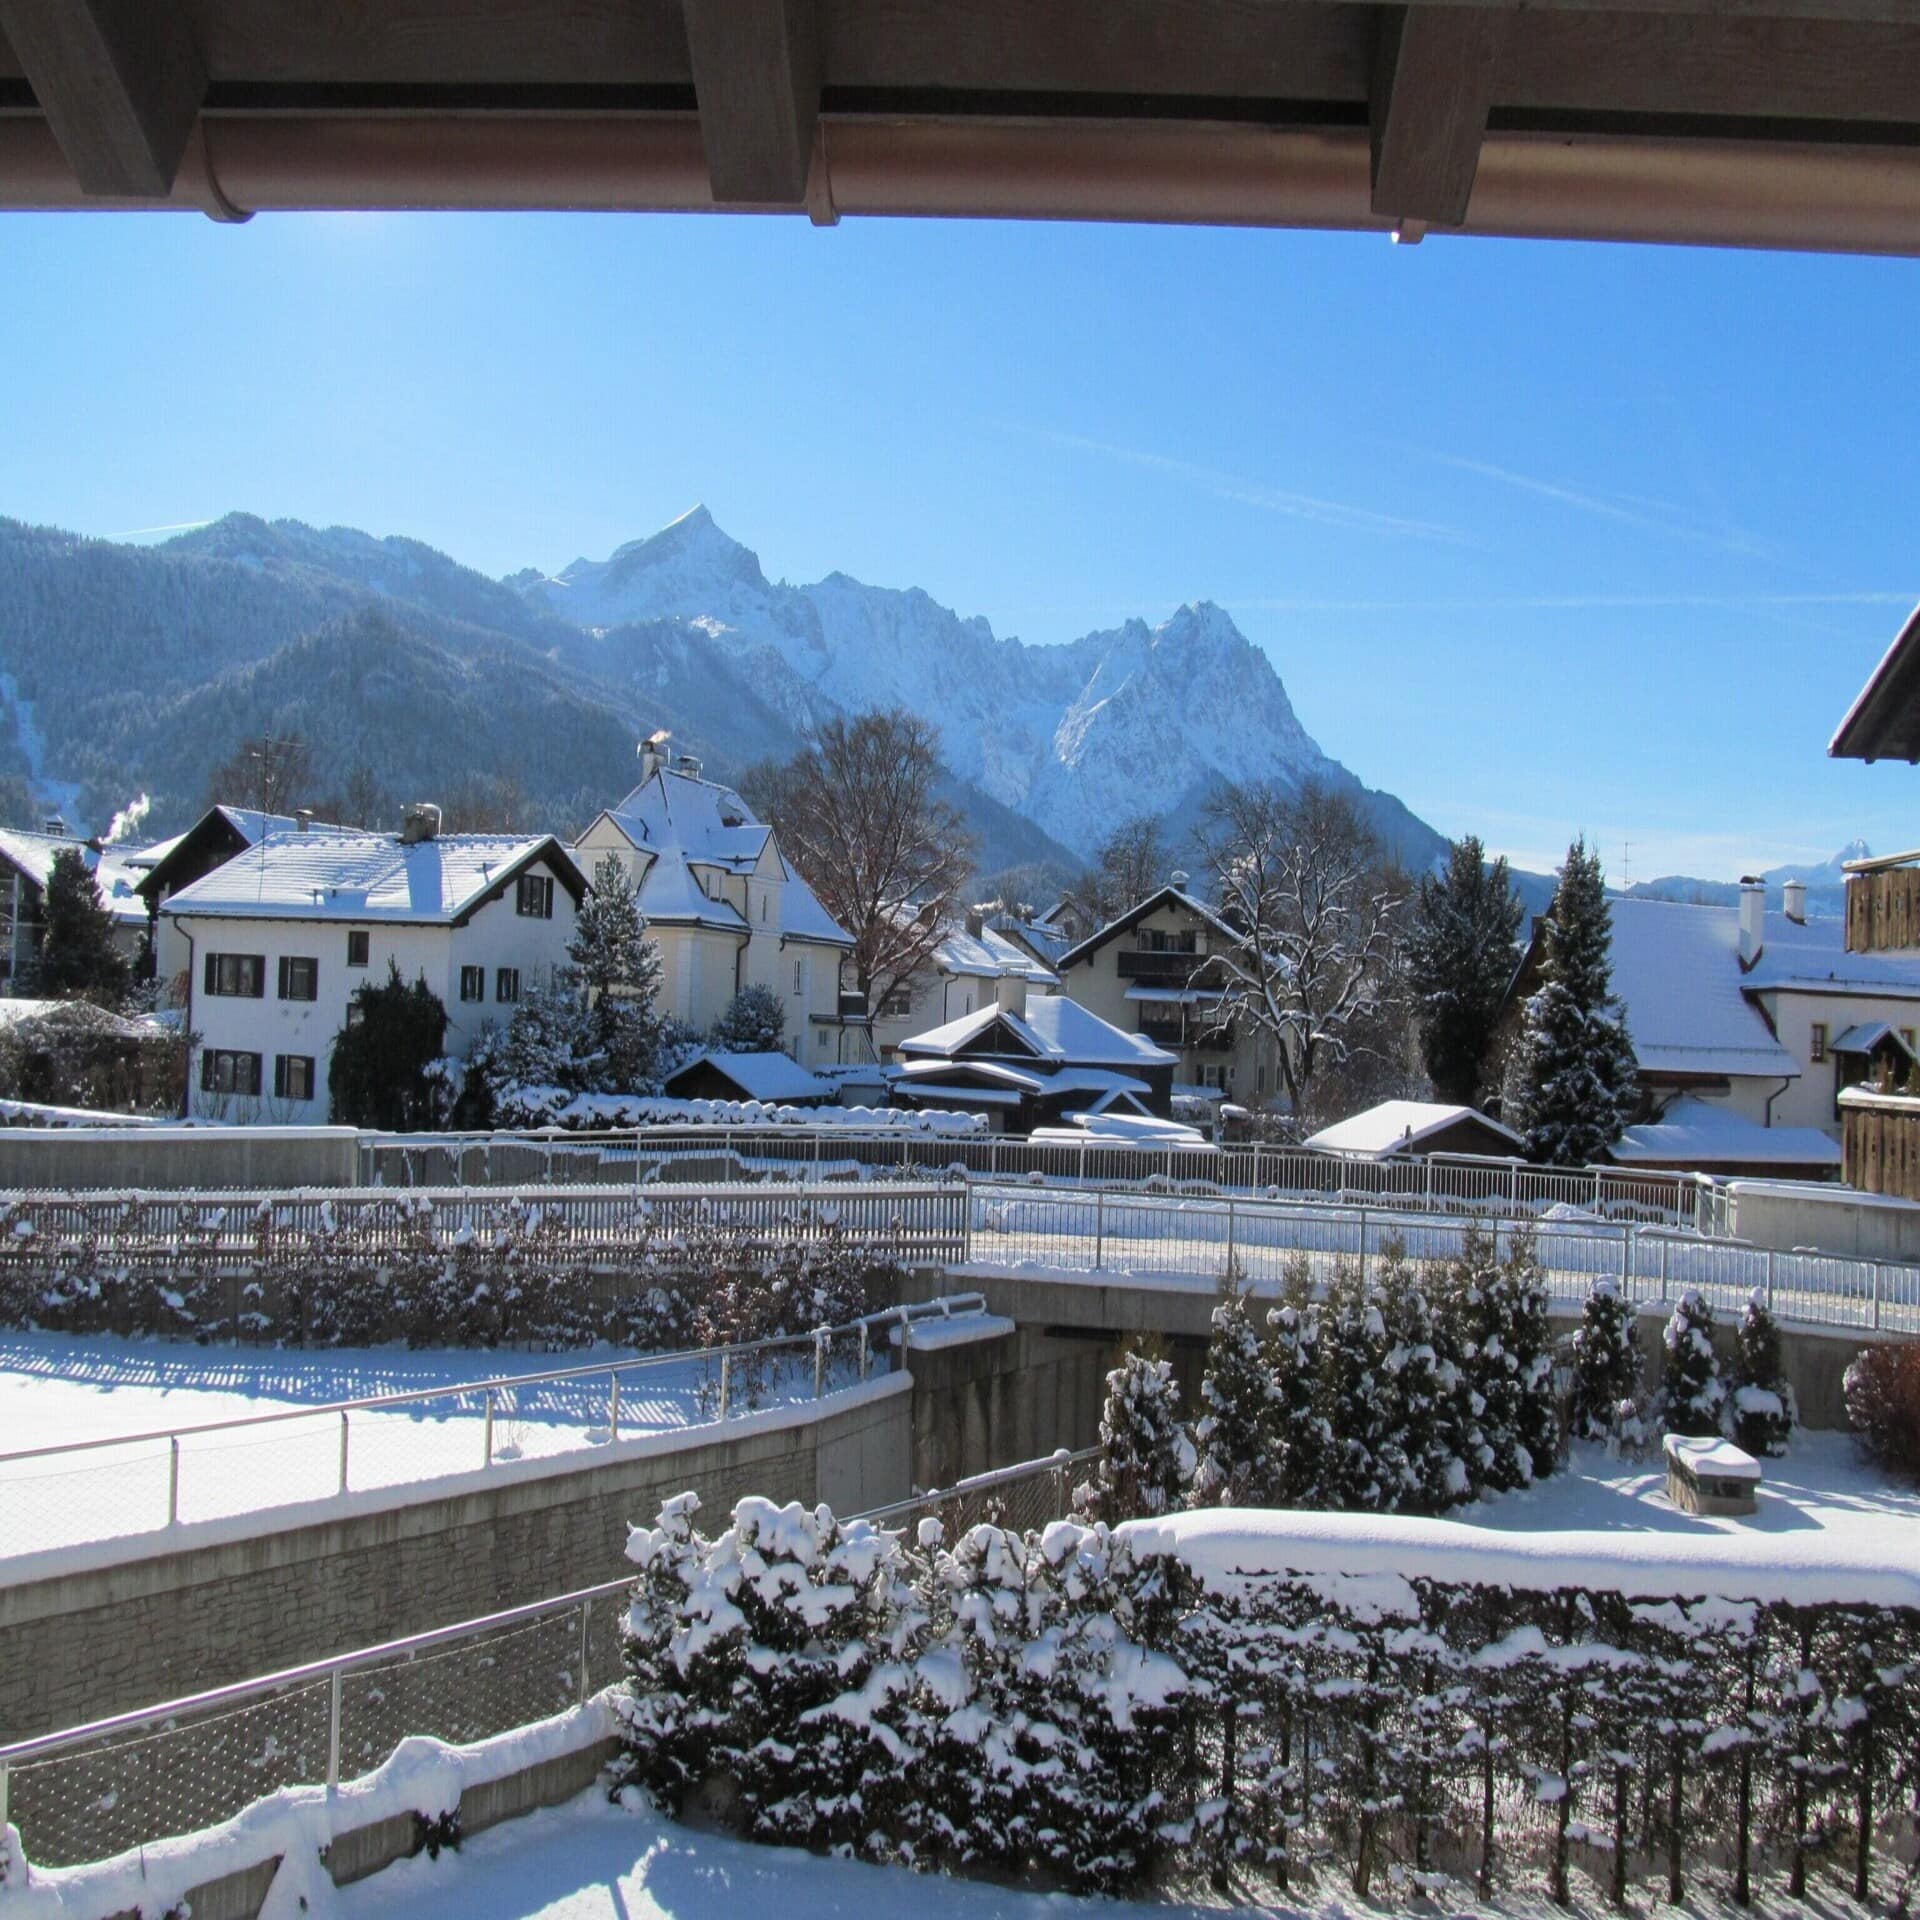 Blick von einem Balkon auf den Ort Garmisch-Partenkirchen. Die Sonne scheint, es liegt Schnee.